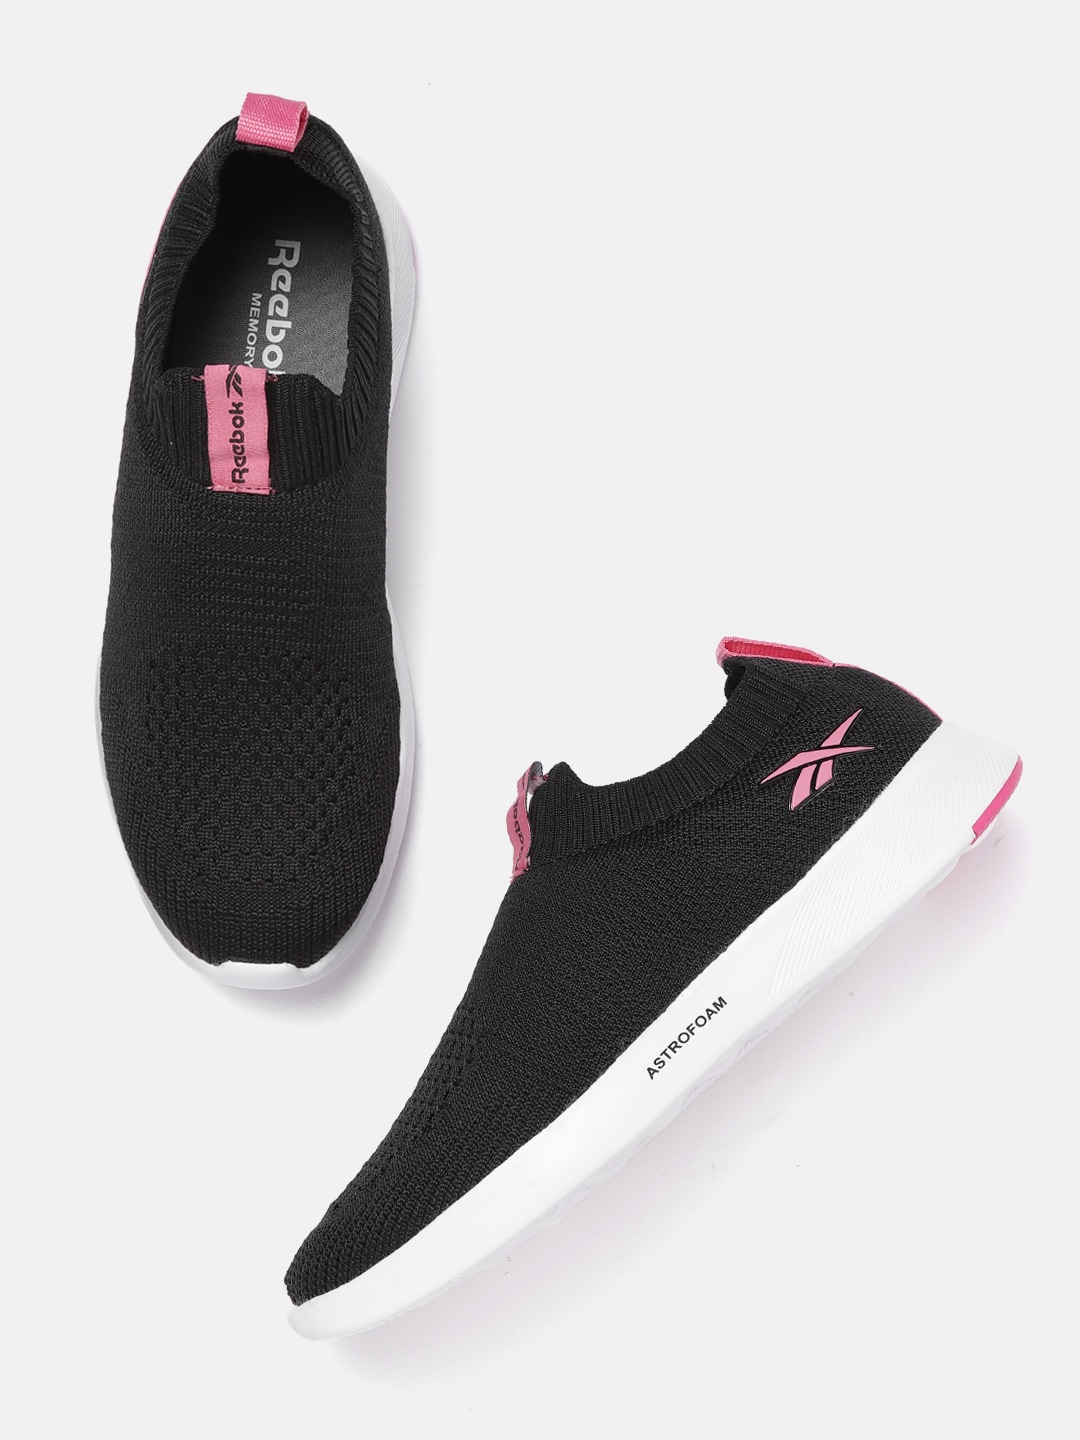 Reebok Women Black & Pink Woven Design Druhan 2.0 Walking Shoes Price in India